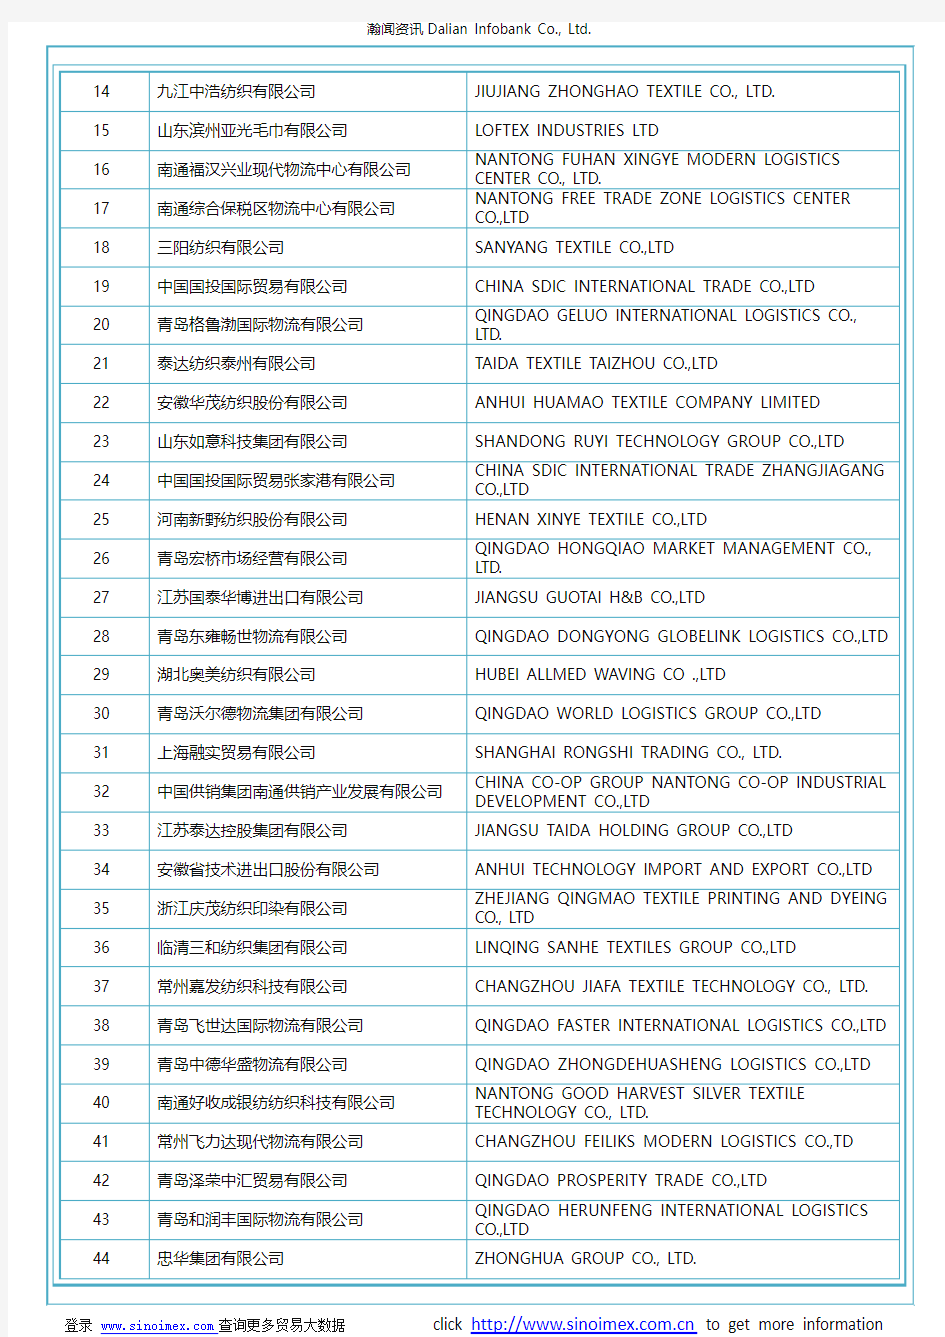 未梳的棉花(HS 52010000)2017 中国(272个)进口商排名(按进口额排名)